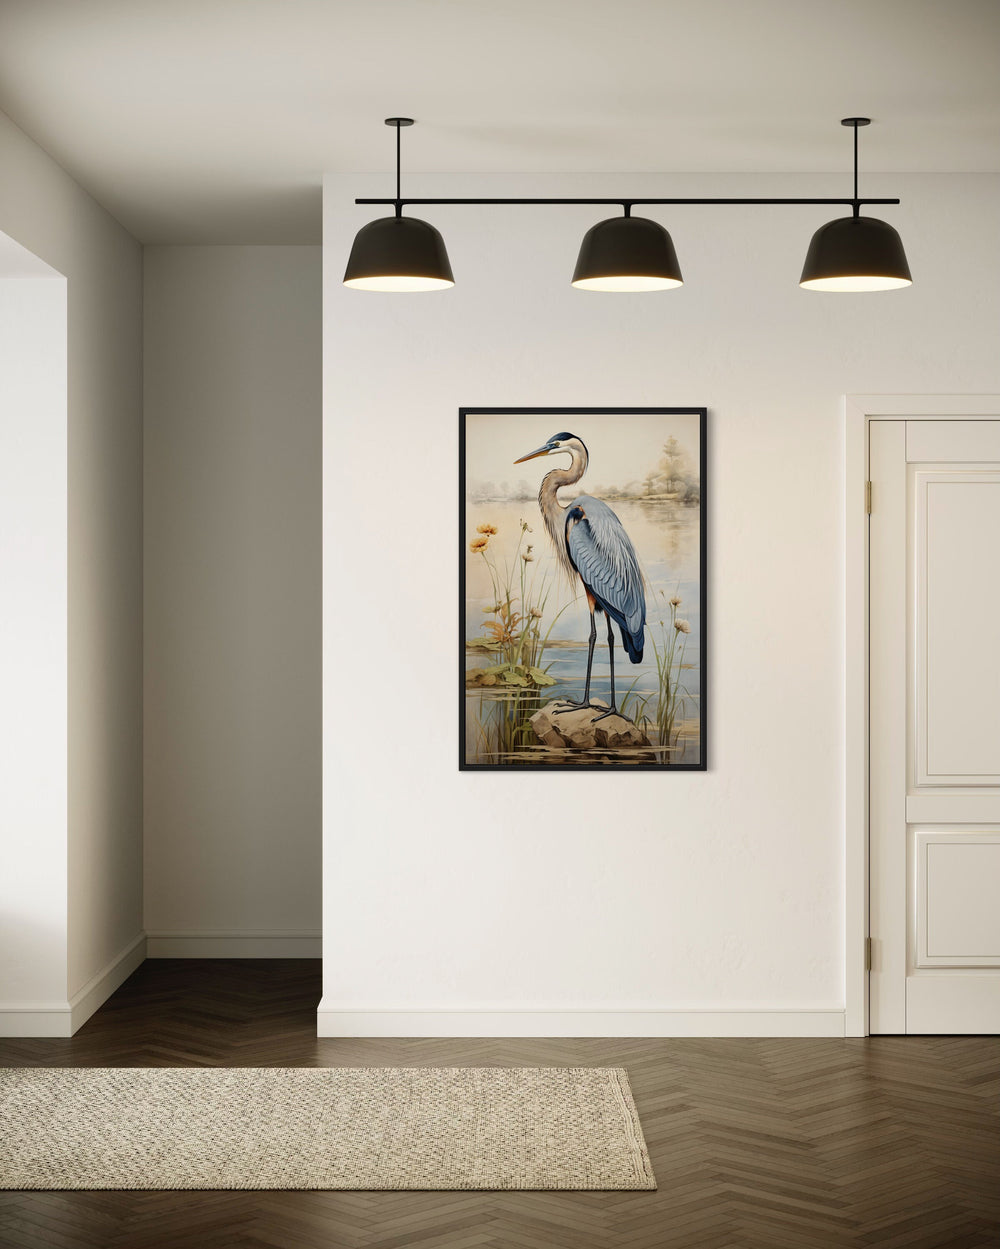 Blue Heron Coastal Bird Canvas Wall Art in living room